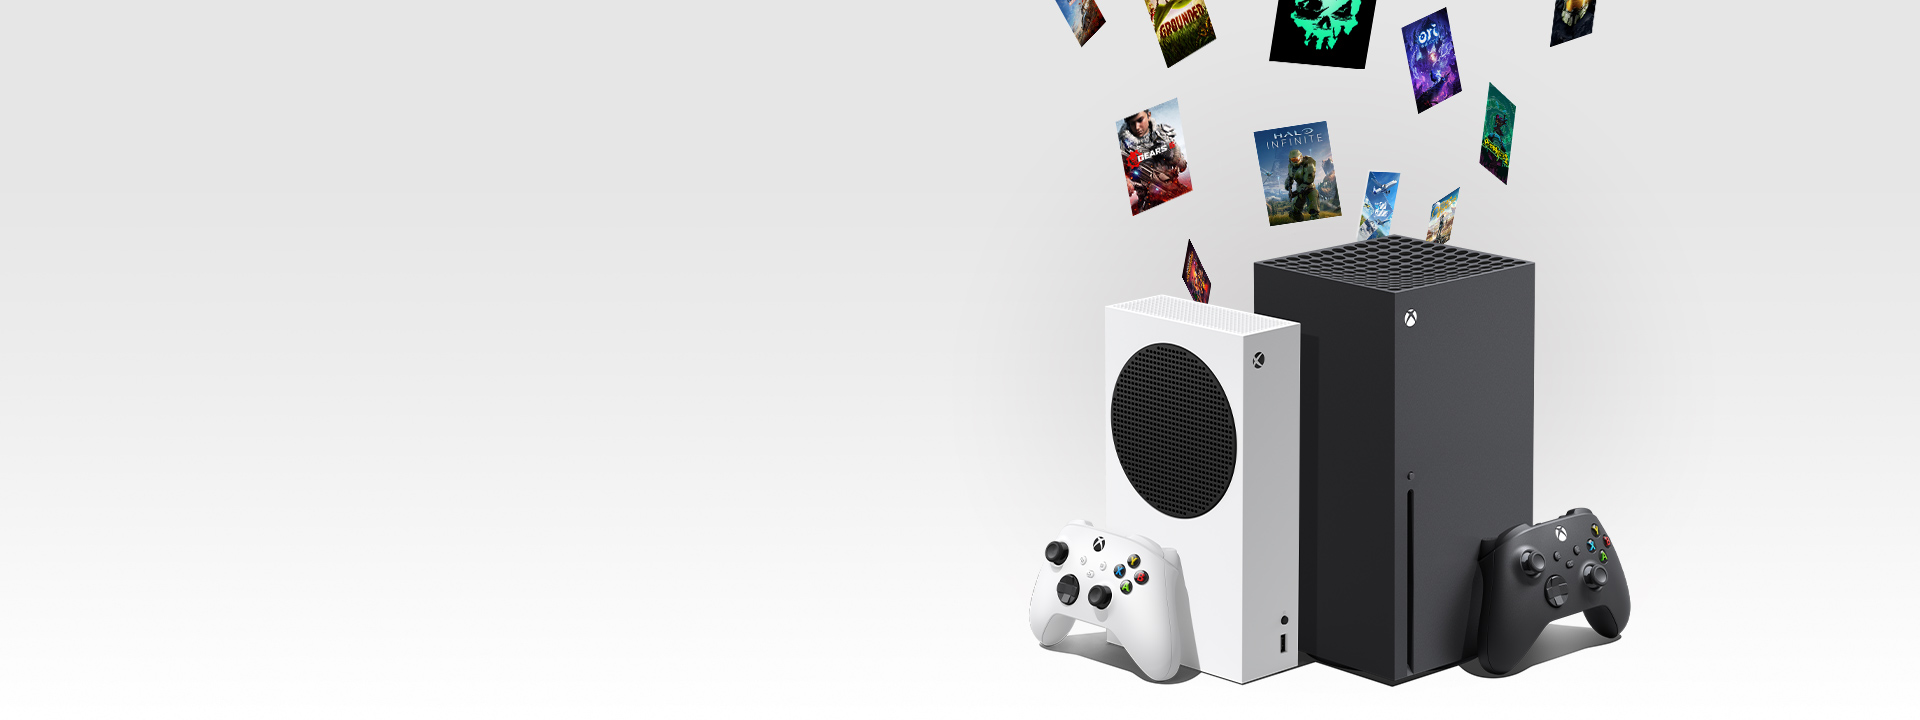 Download von digitalen Xbox-Spielen auf Xbox Series X und Xbox Series S Konsolen